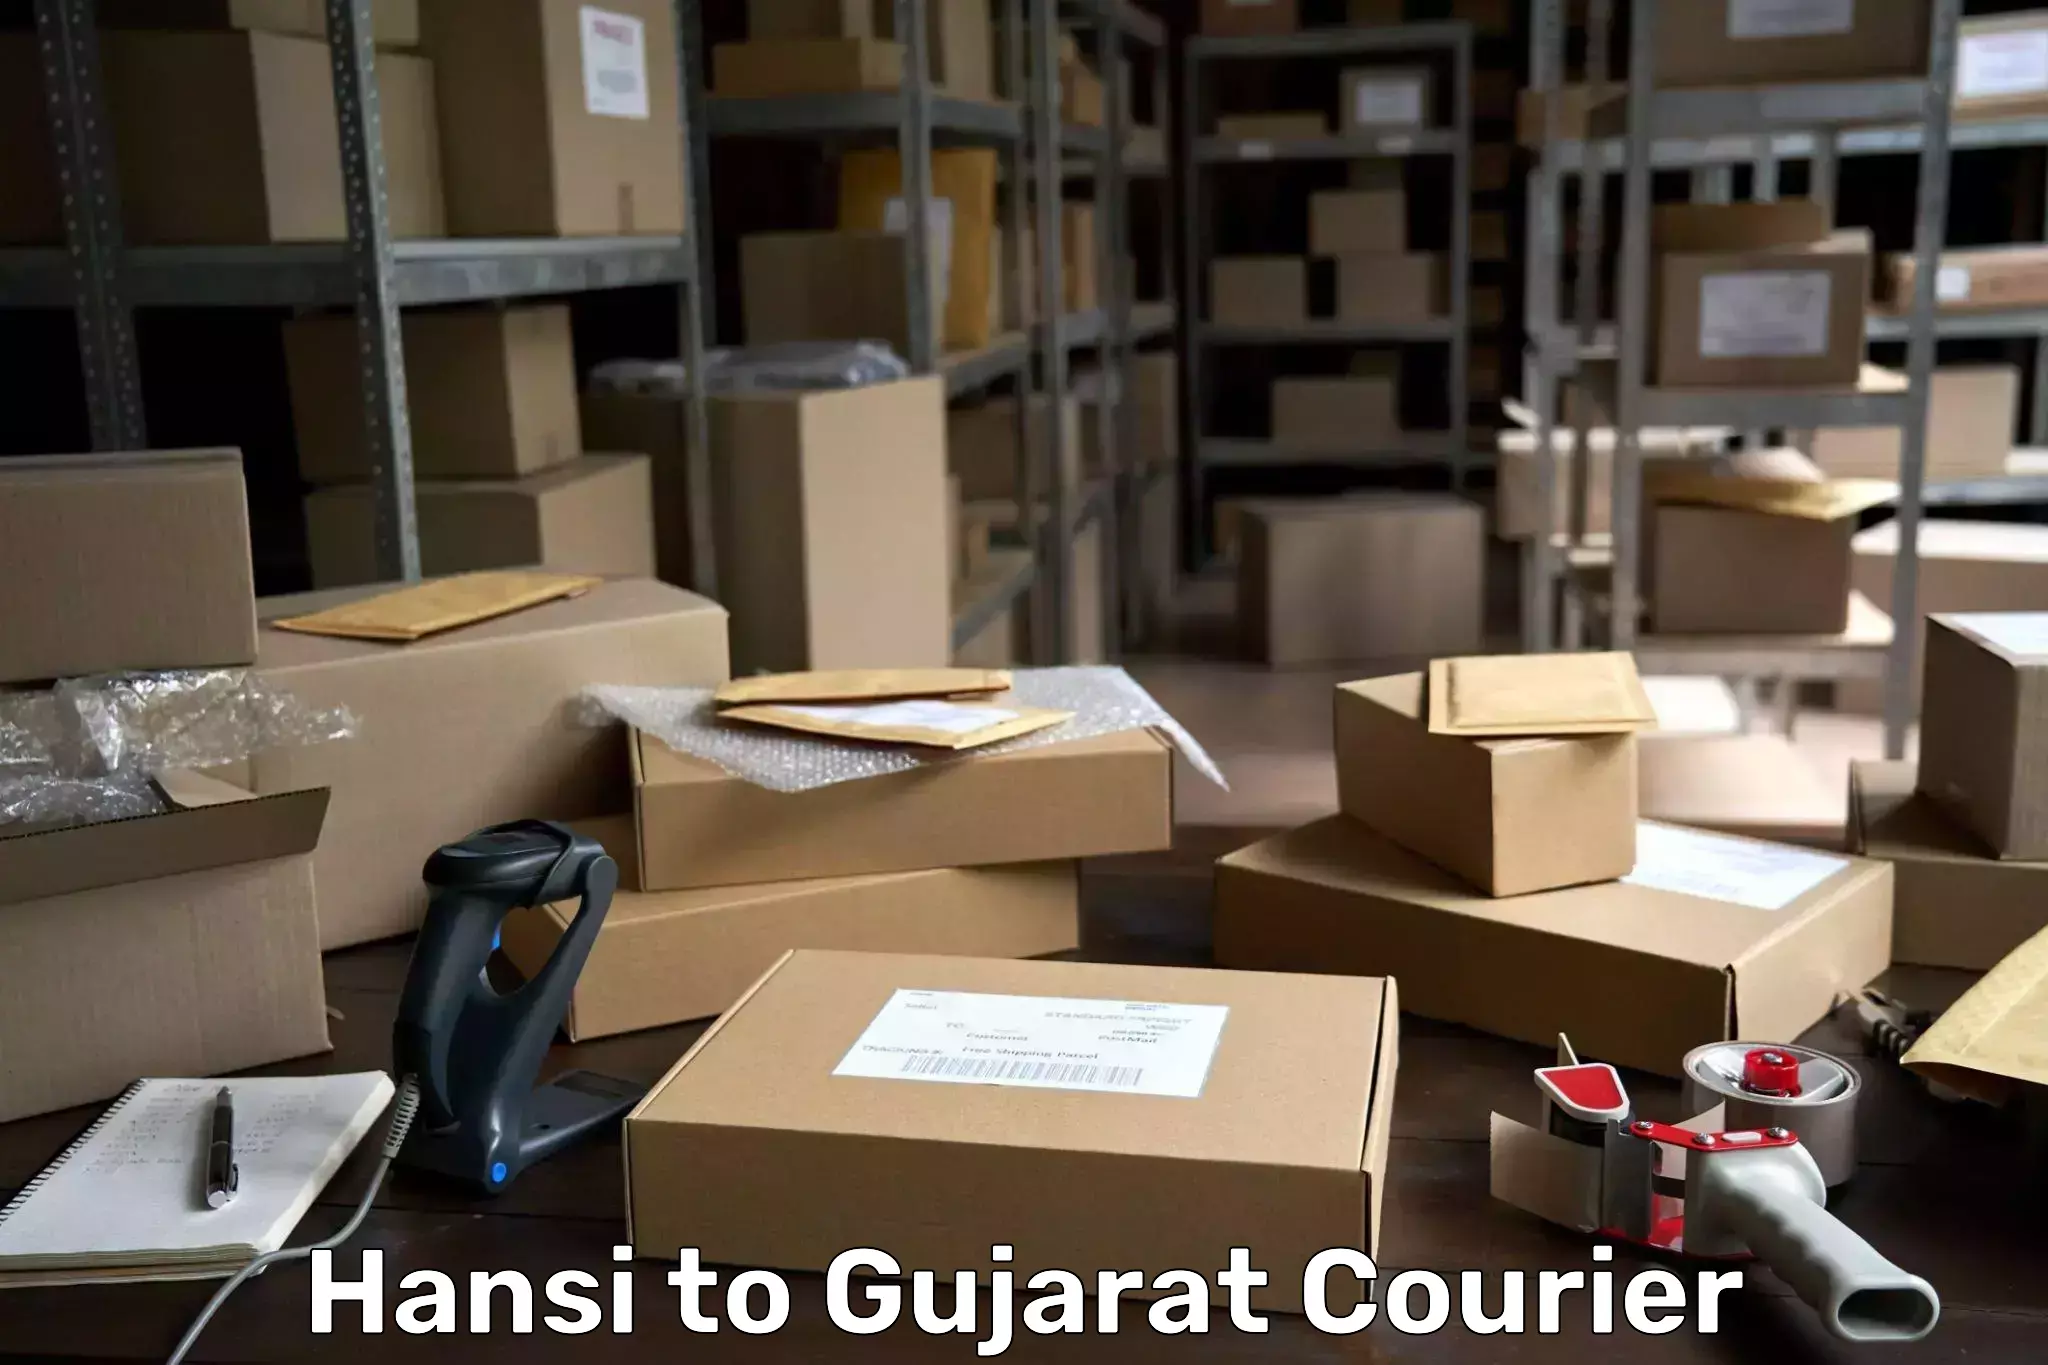 Express mail service Hansi to Gujarat